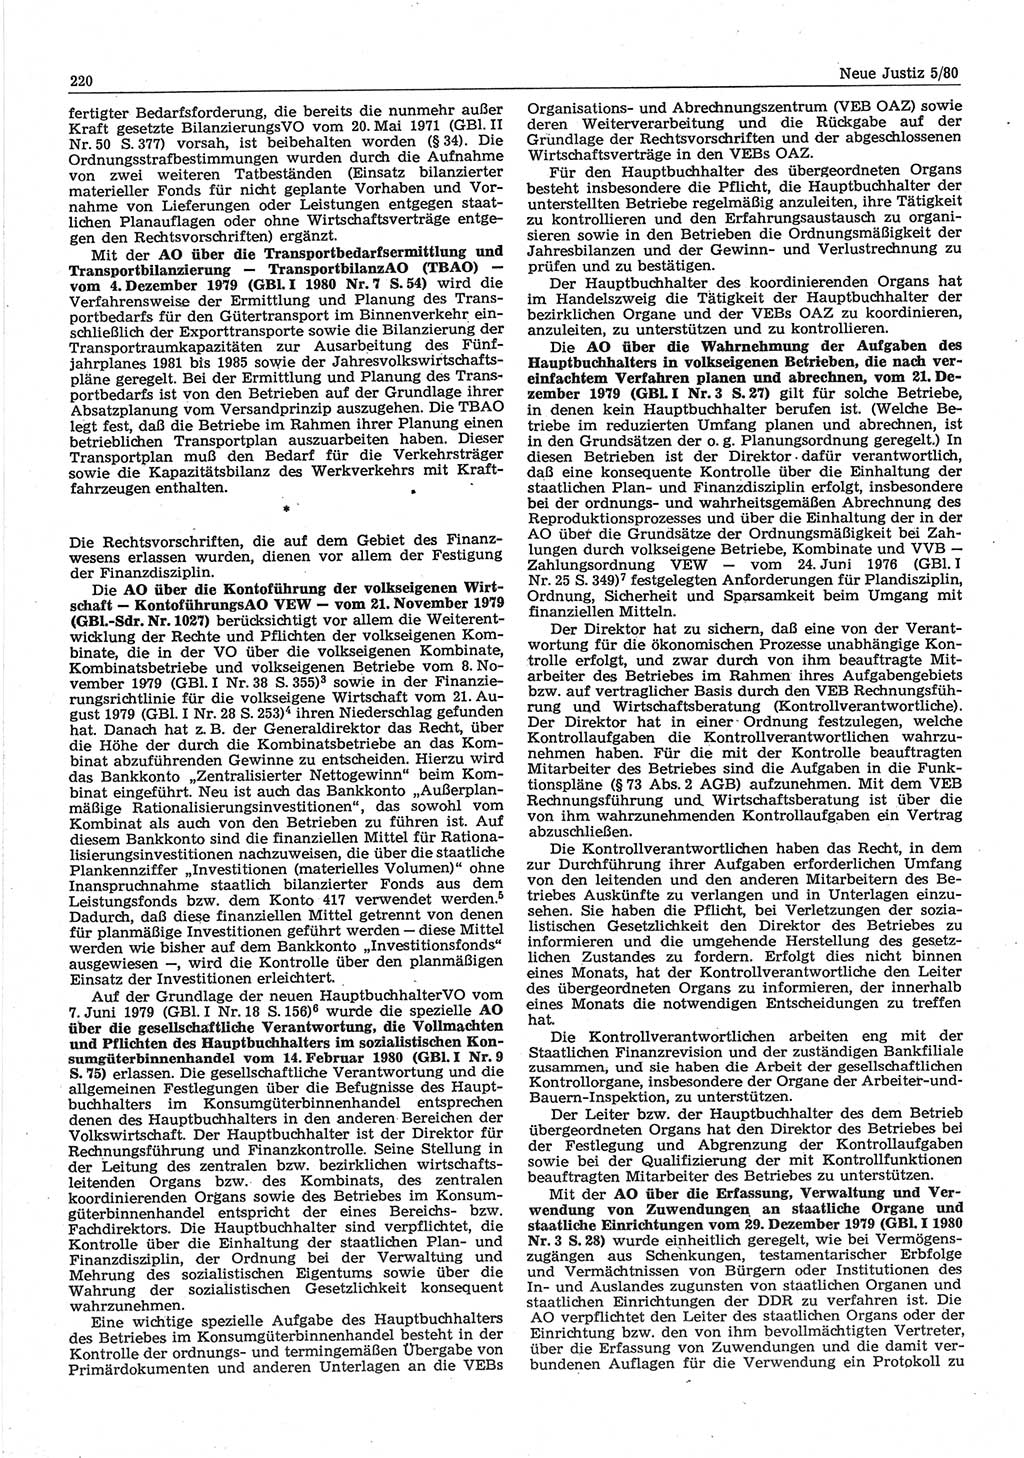 Neue Justiz (NJ), Zeitschrift für sozialistisches Recht und Gesetzlichkeit [Deutsche Demokratische Republik (DDR)], 34. Jahrgang 1980, Seite 220 (NJ DDR 1980, S. 220)